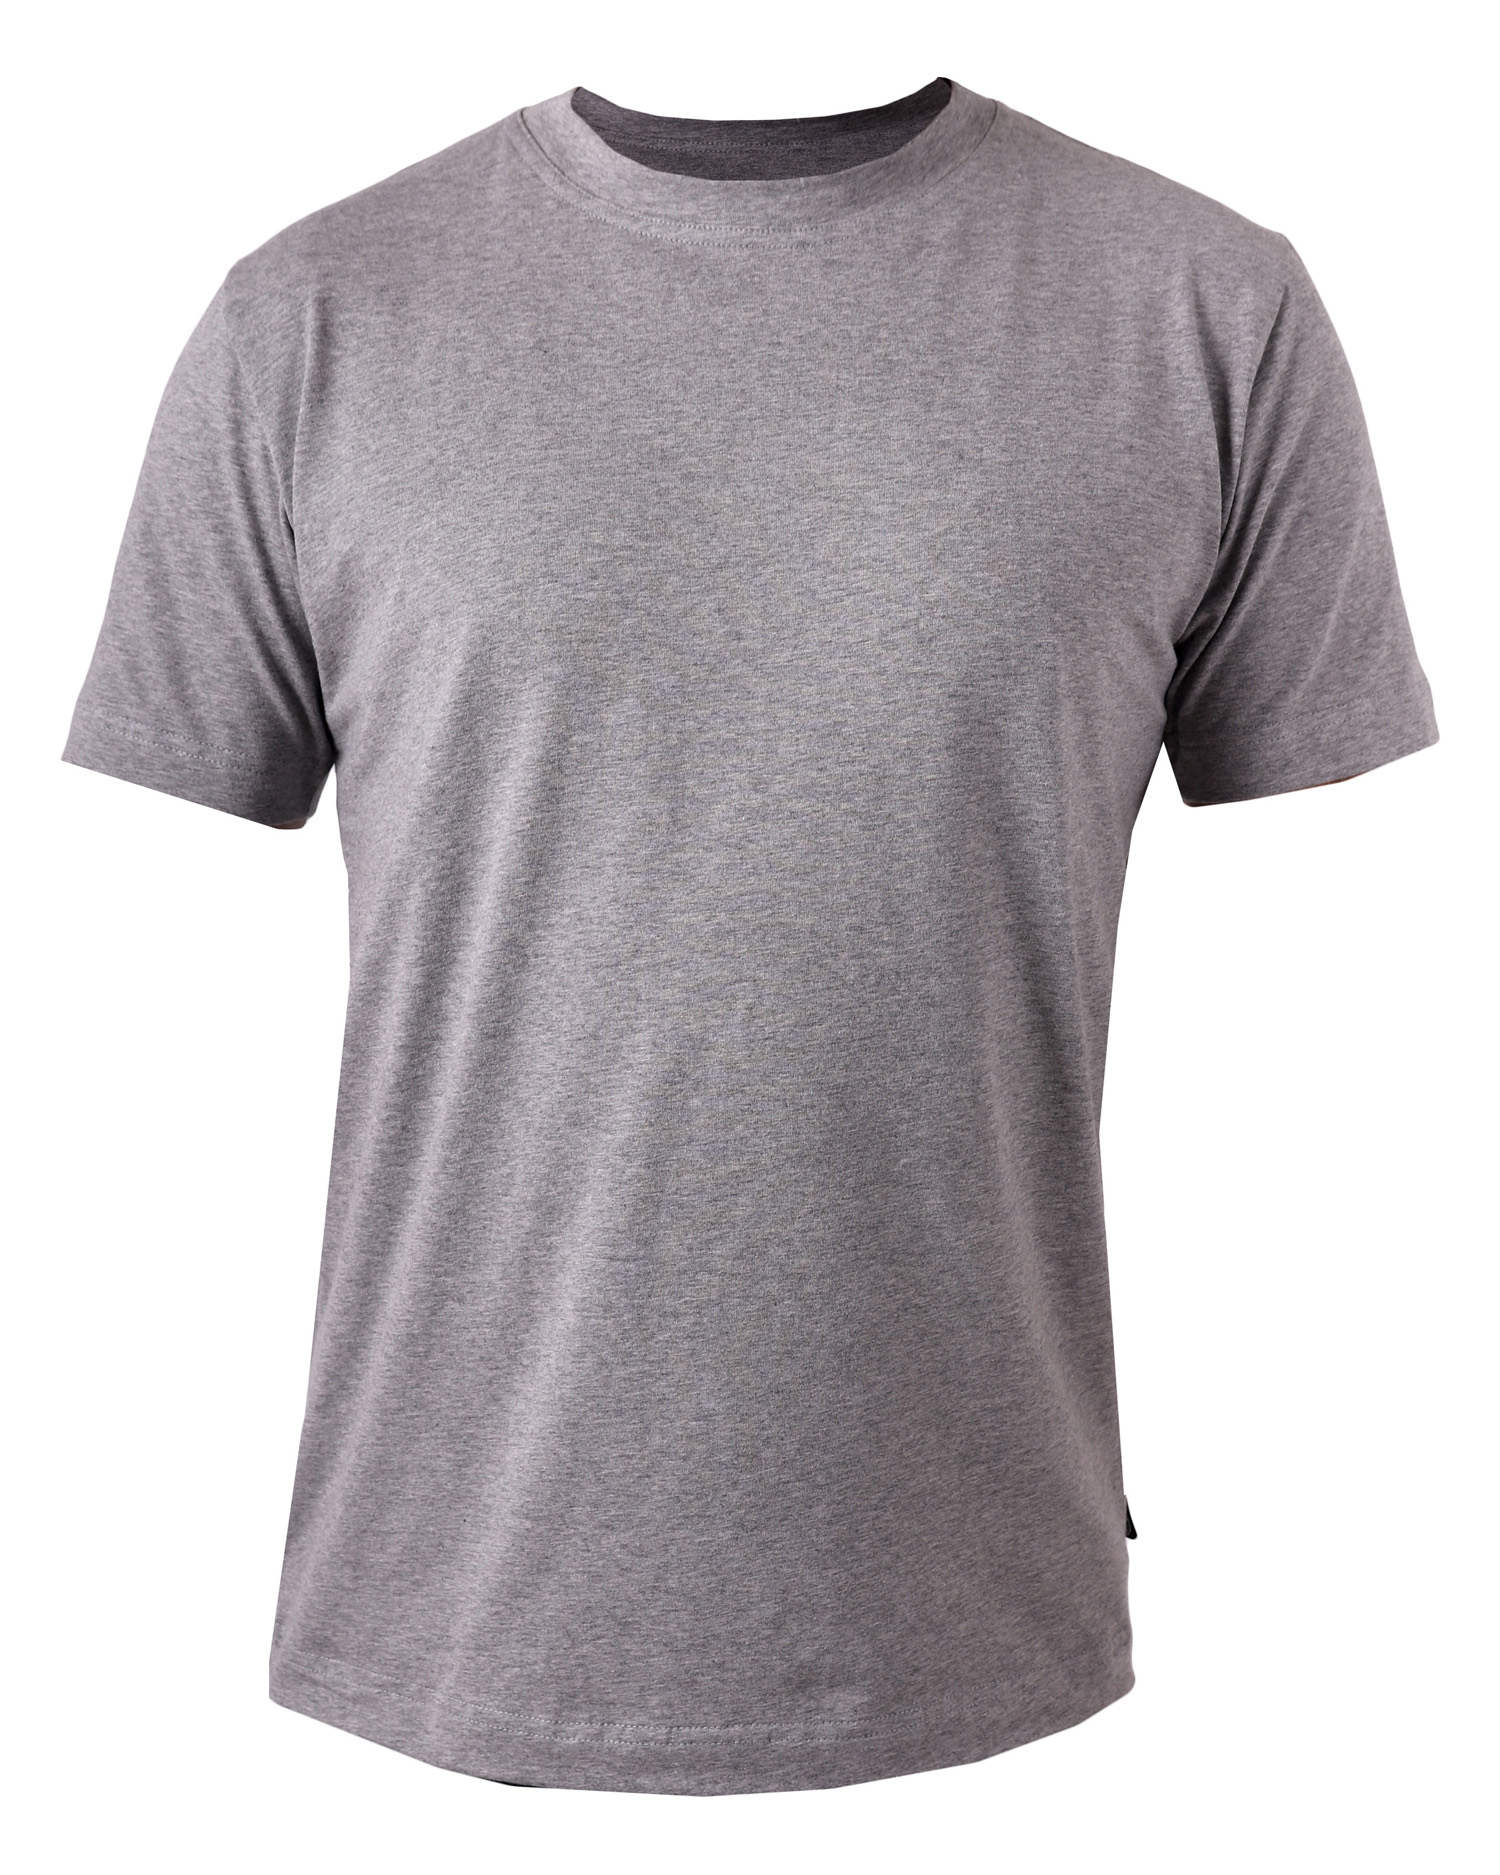 Pánské tričko Marek, krátký rukáv, šedý melír